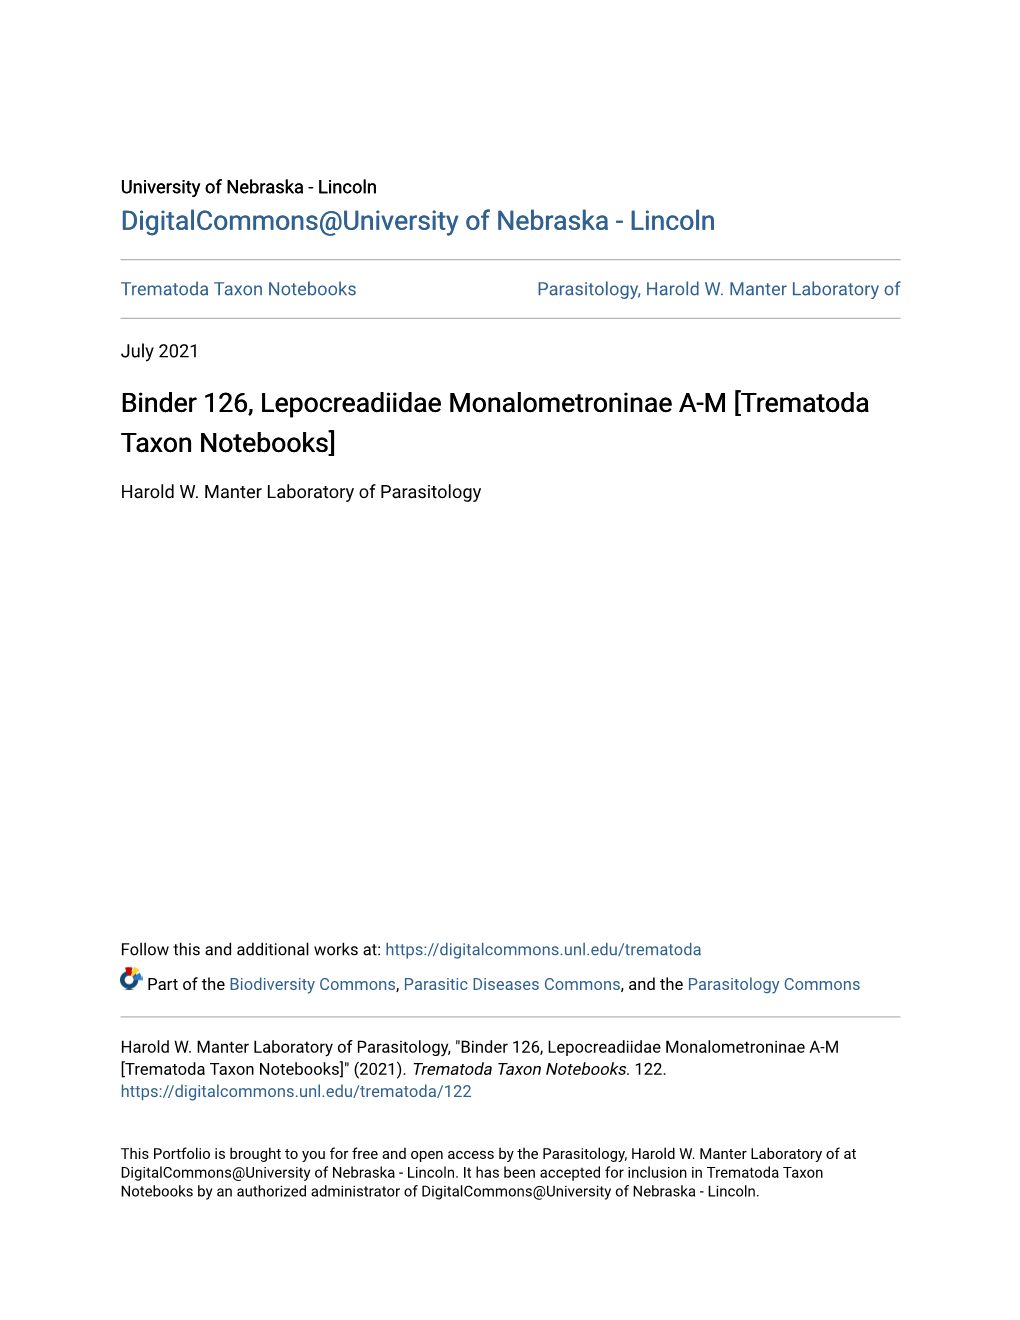 Binder 126, Lepocreadiidae Monalometroninae A-M [Trematoda Taxon Notebooks]